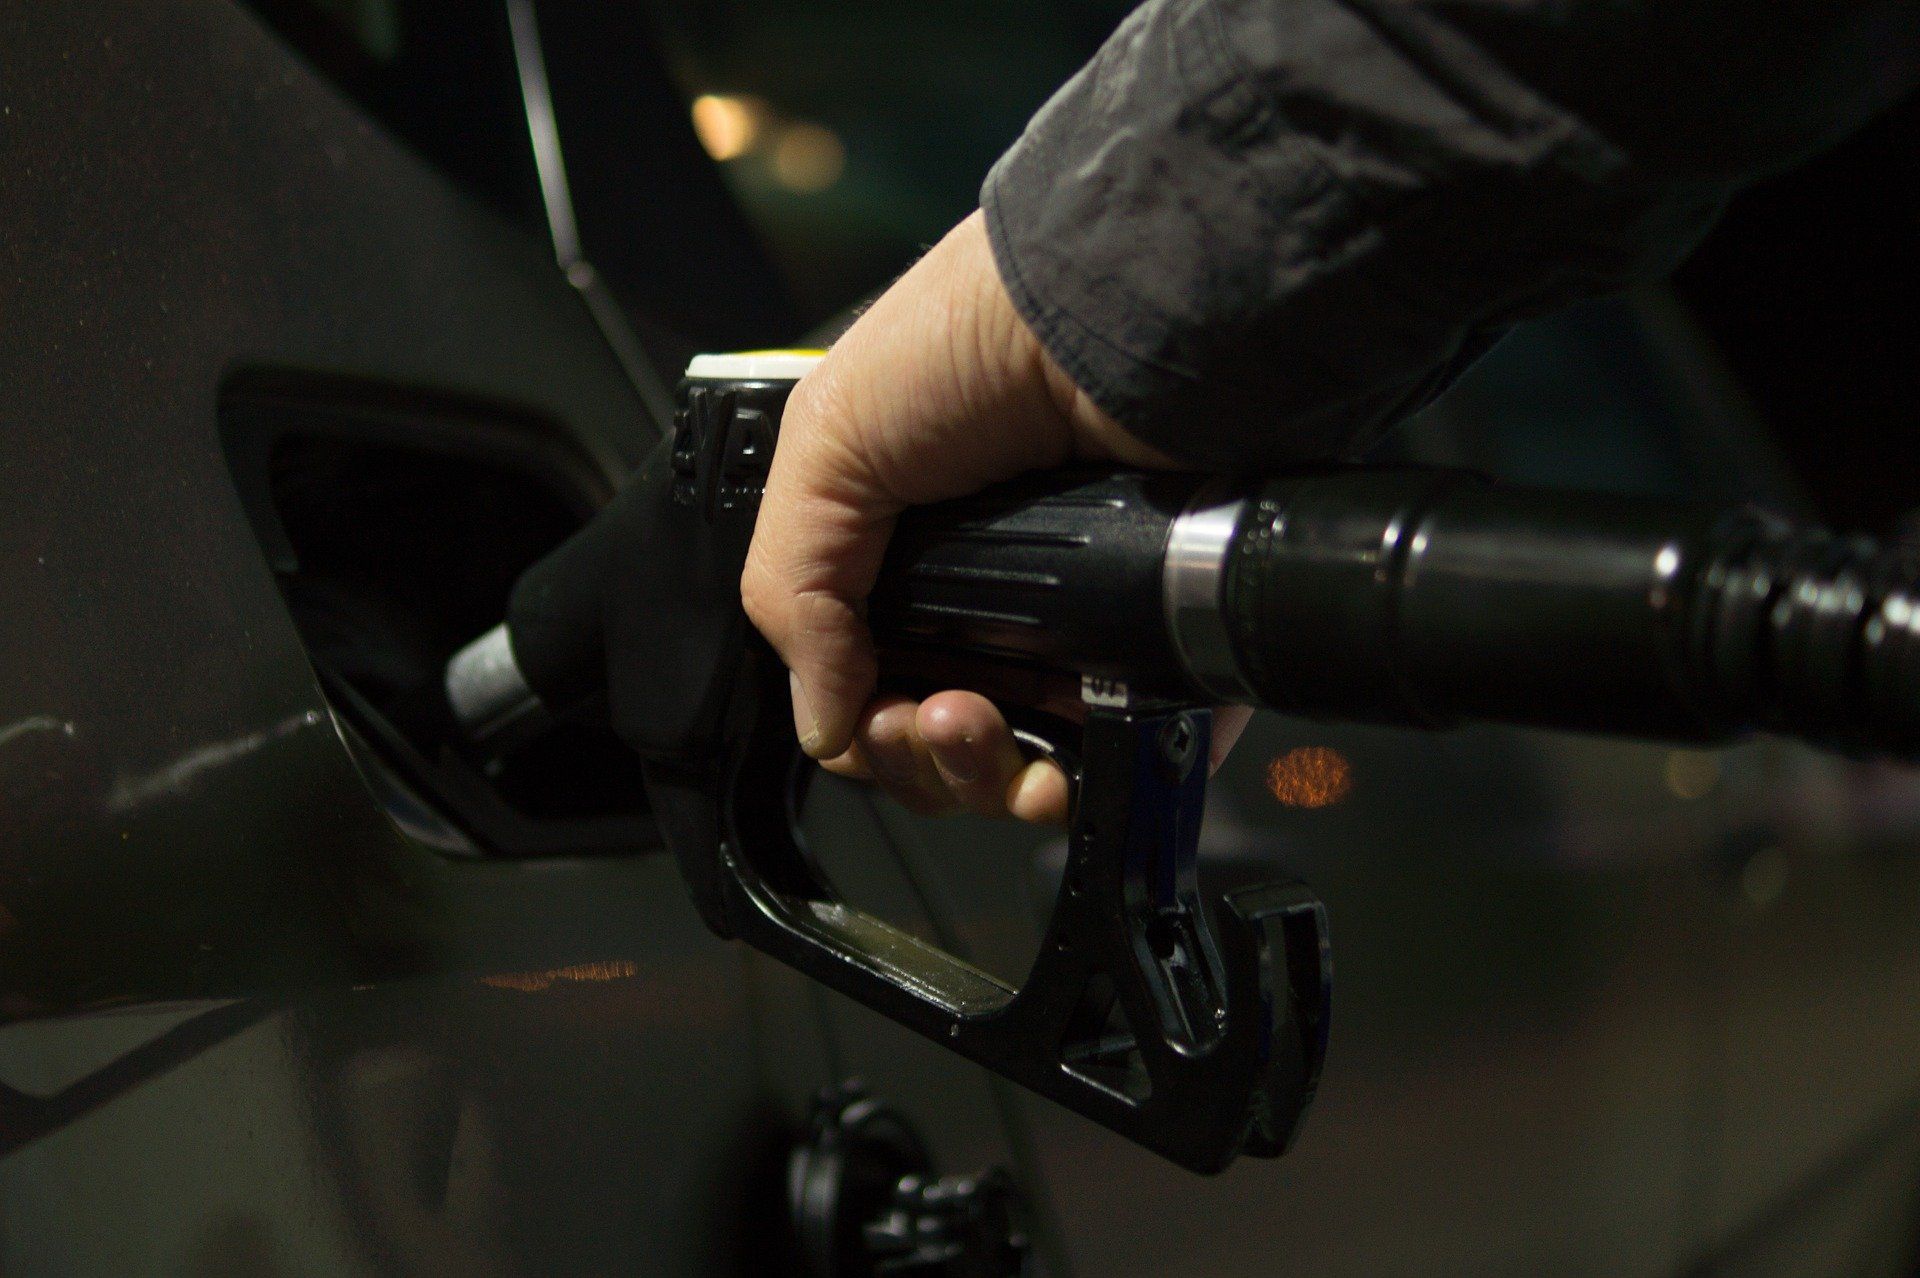 Fuel price July 5, 2022: Petrol Rs 96.72, diesel Rs 89.62 in Delhi